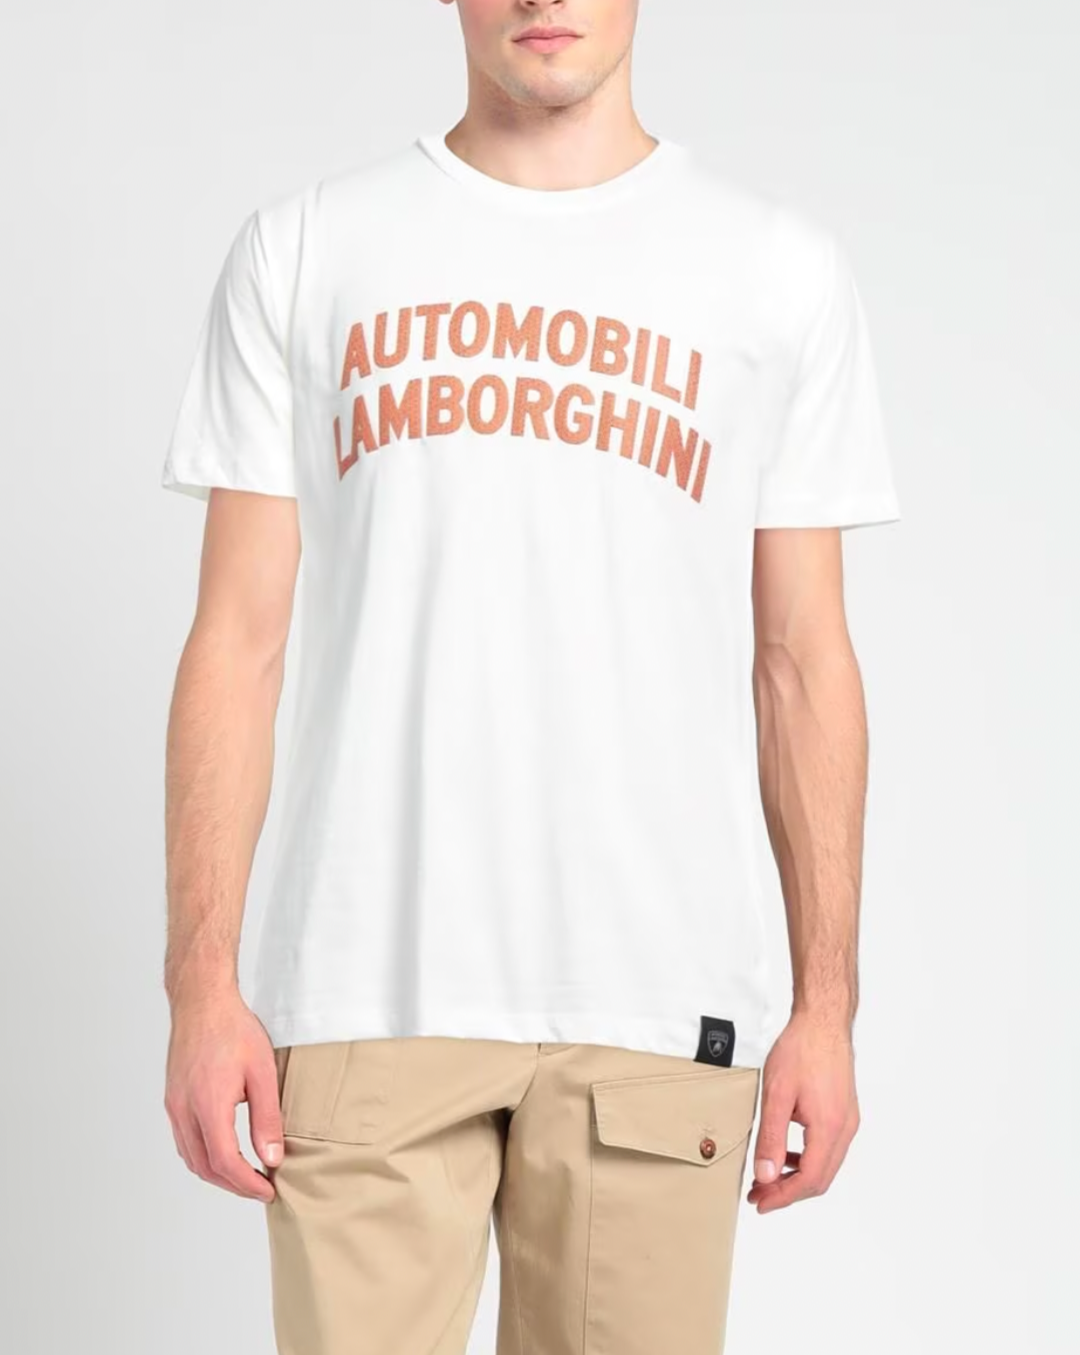 Automobili Lamborghini Maxi Logo T-Shirt - White